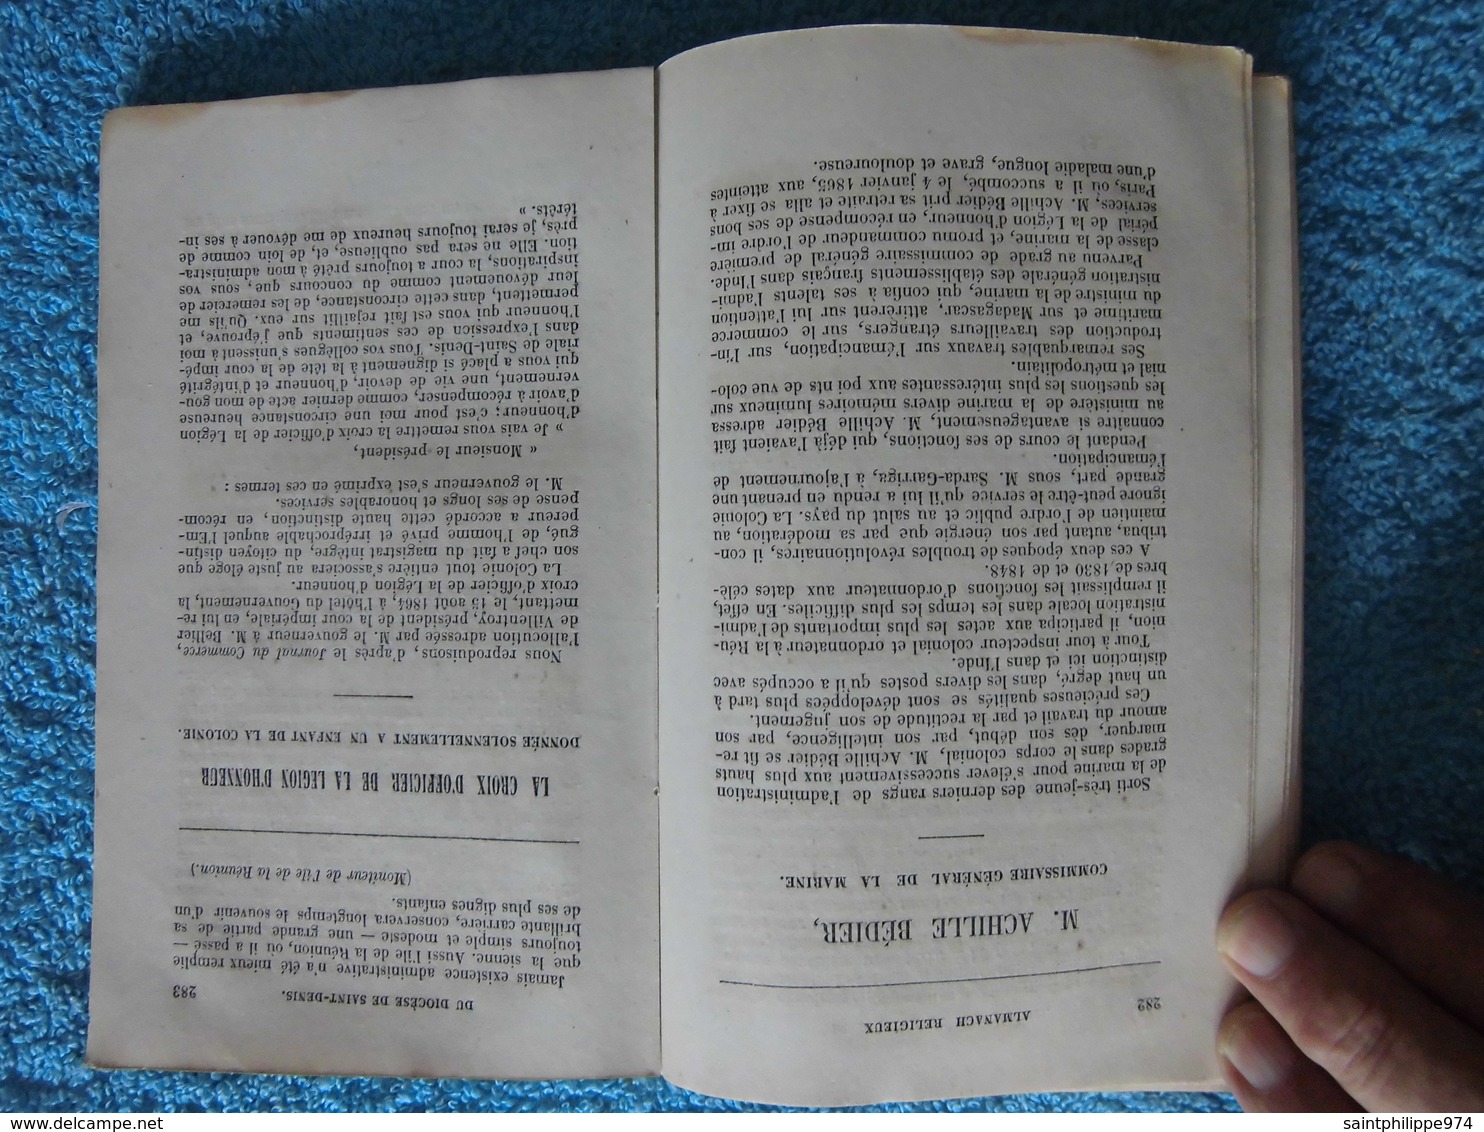 Réunion : rare ouvrage de 1866 "Almanach religieux de l'Ile Bourbon"